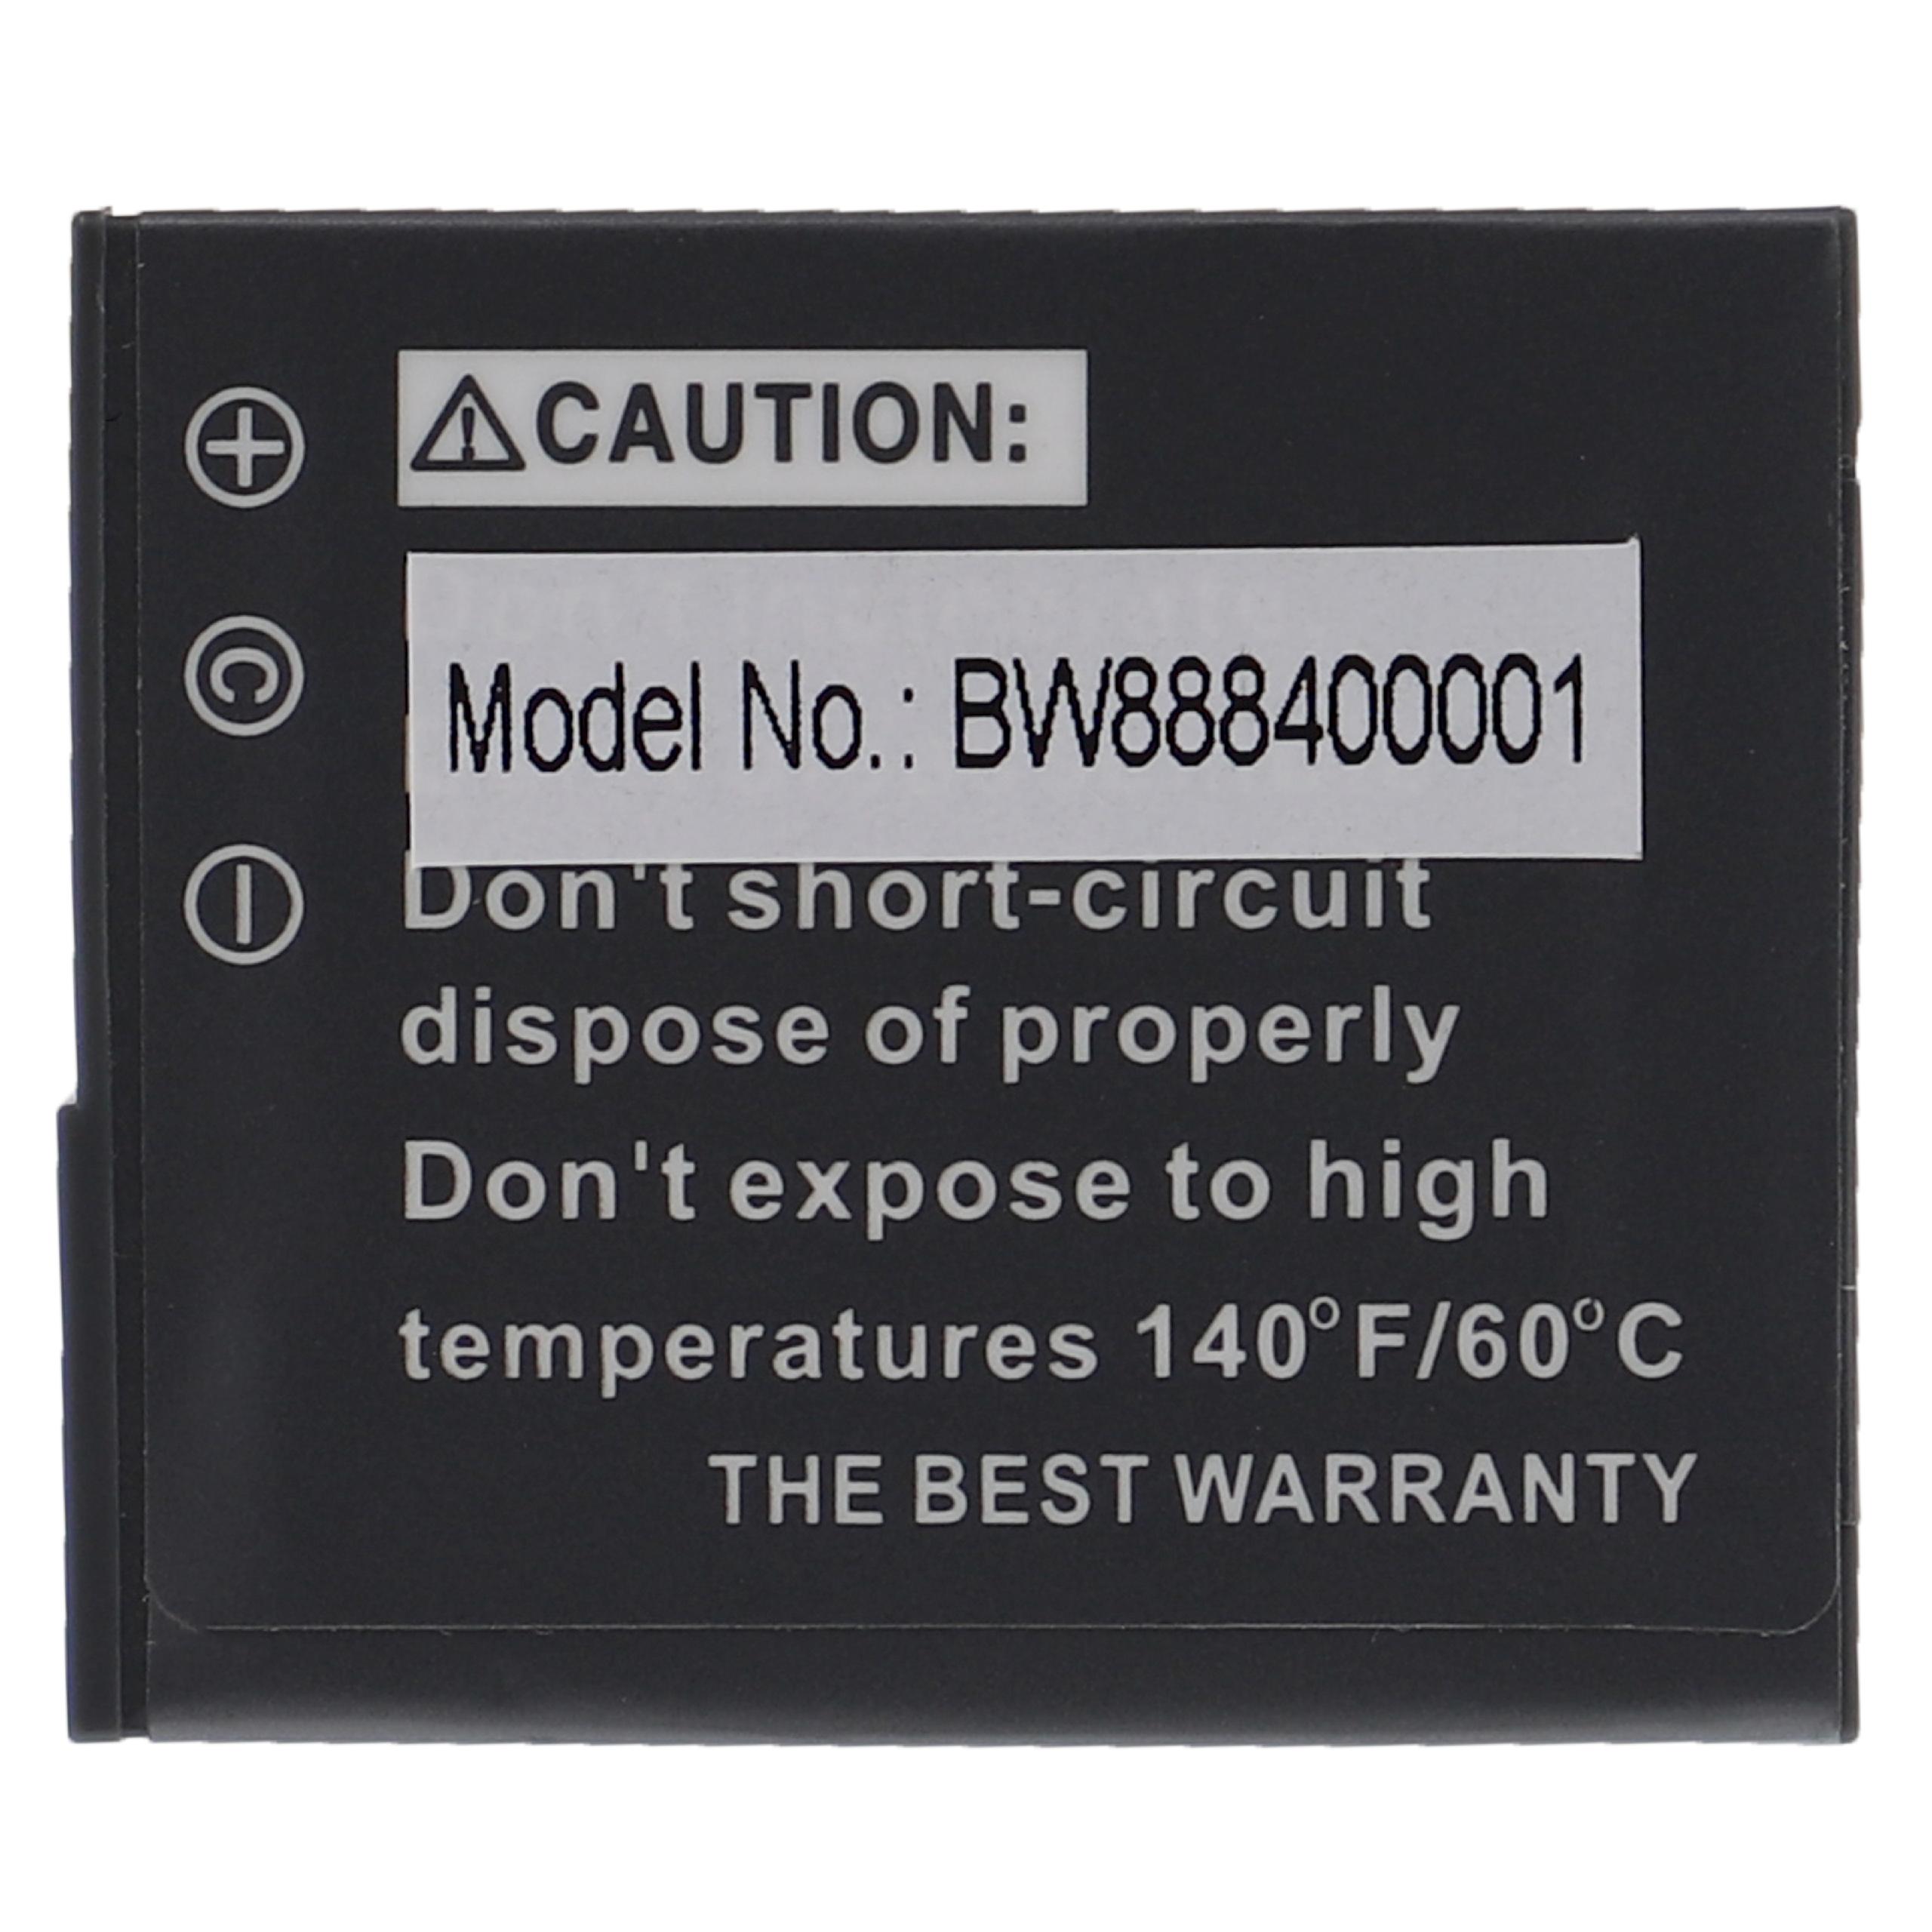 Batterie remplace Sony NP-BG1, NP-FG1 pour appareil photo - 1020mAh 3,6V Li-ion